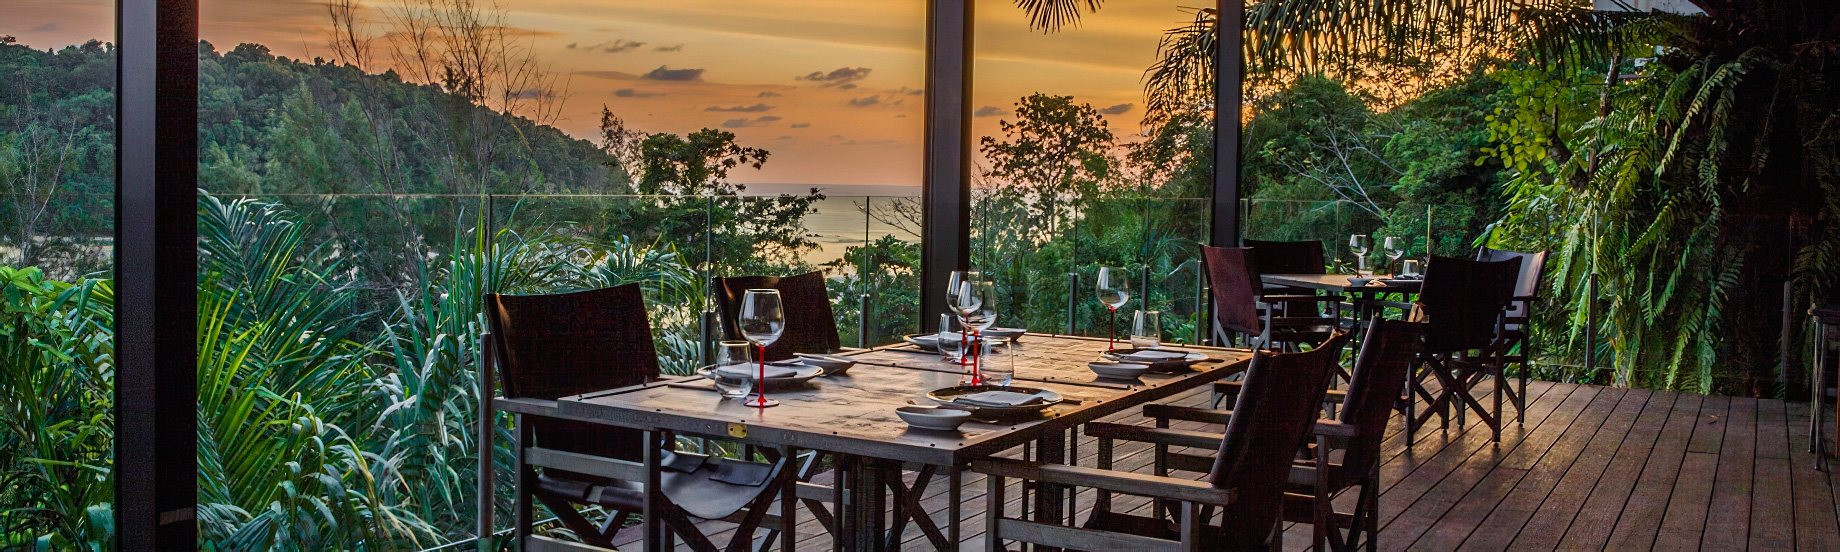 Anantara Layan Phuket Resort & Residences - Thailand - Age Restaurant